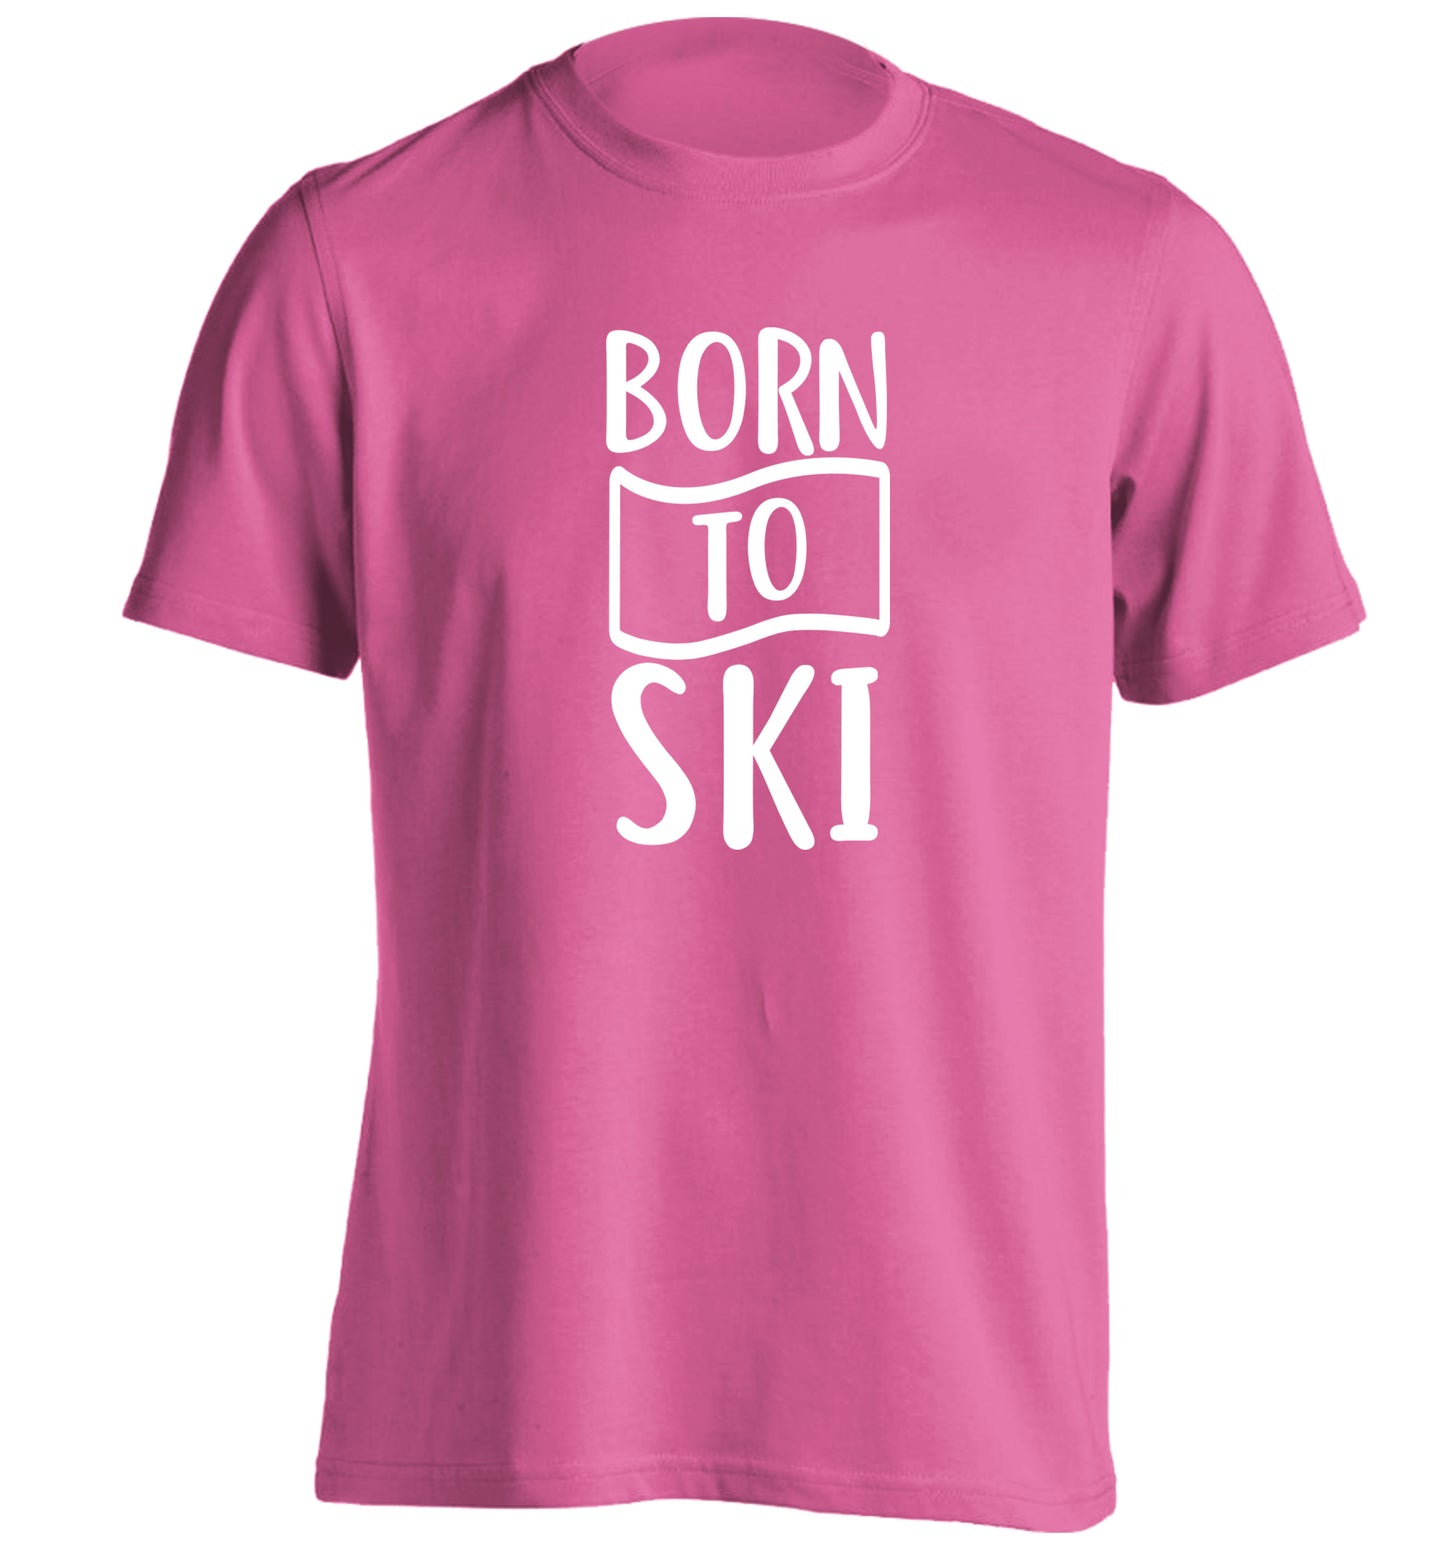 Born to ski adults unisexpink Tshirt 2XL